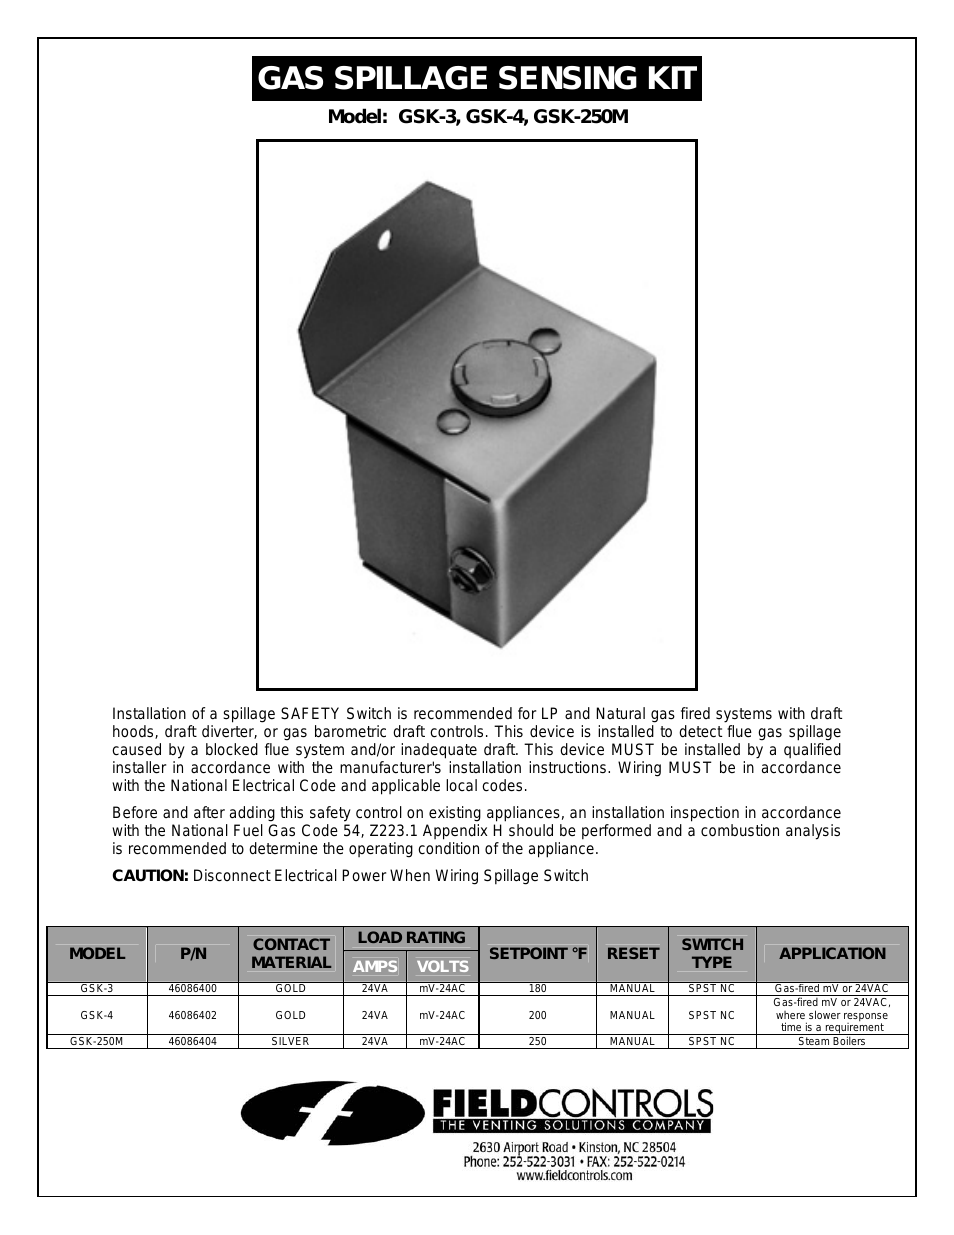 Gas Spillage Sensing Kit GSK-250M